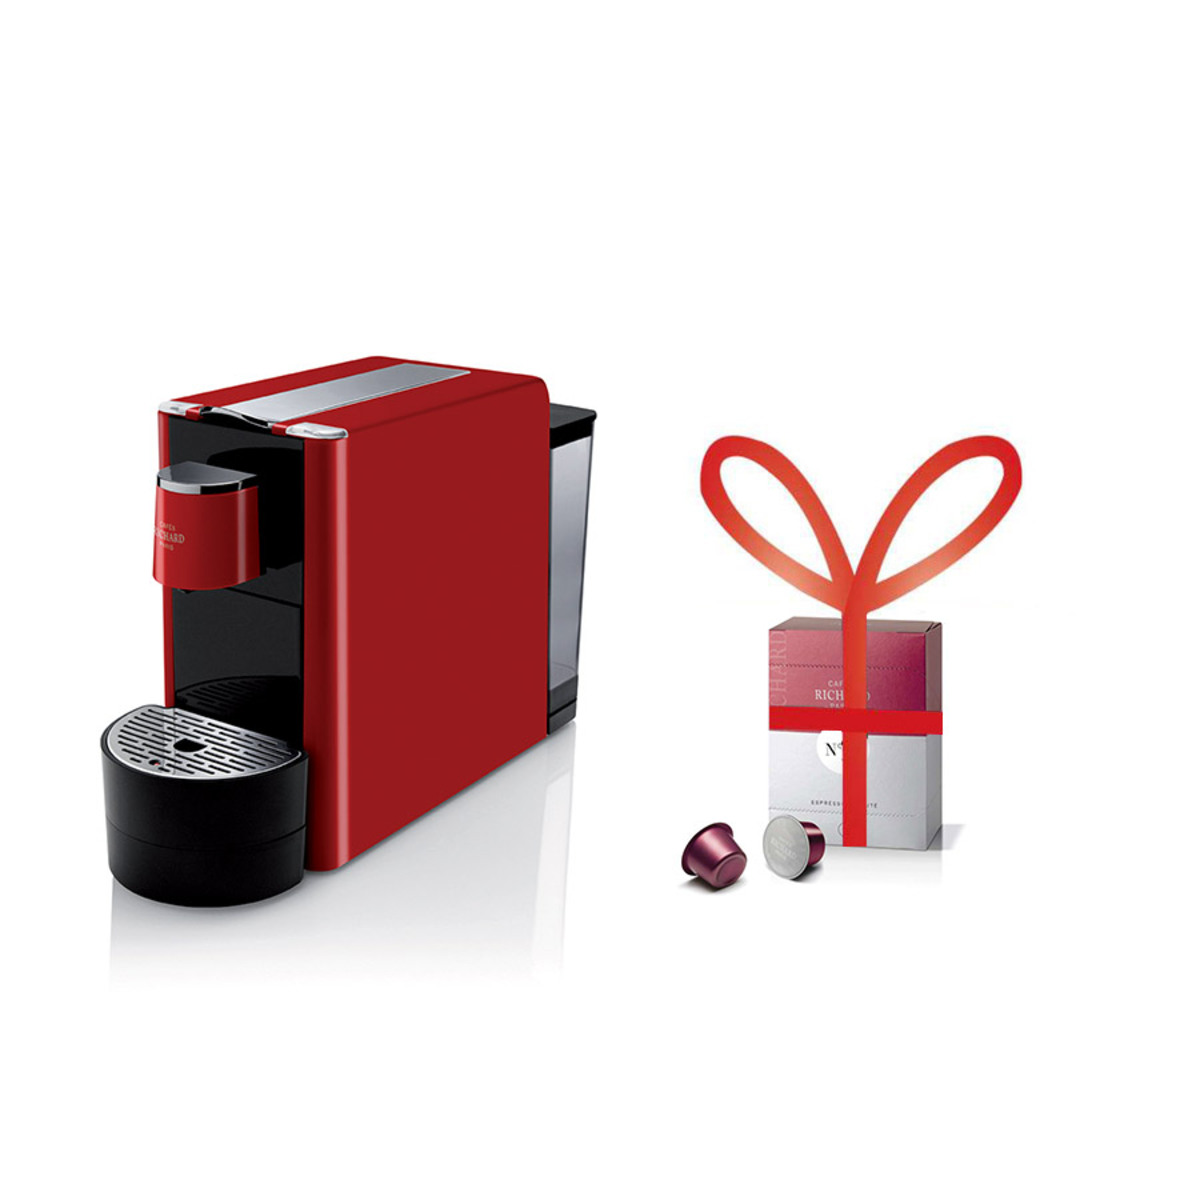 Machine Ventura rouge pour Capsules Premium Cafés Richard -  1 étui de 24 capsules premium N8 offert